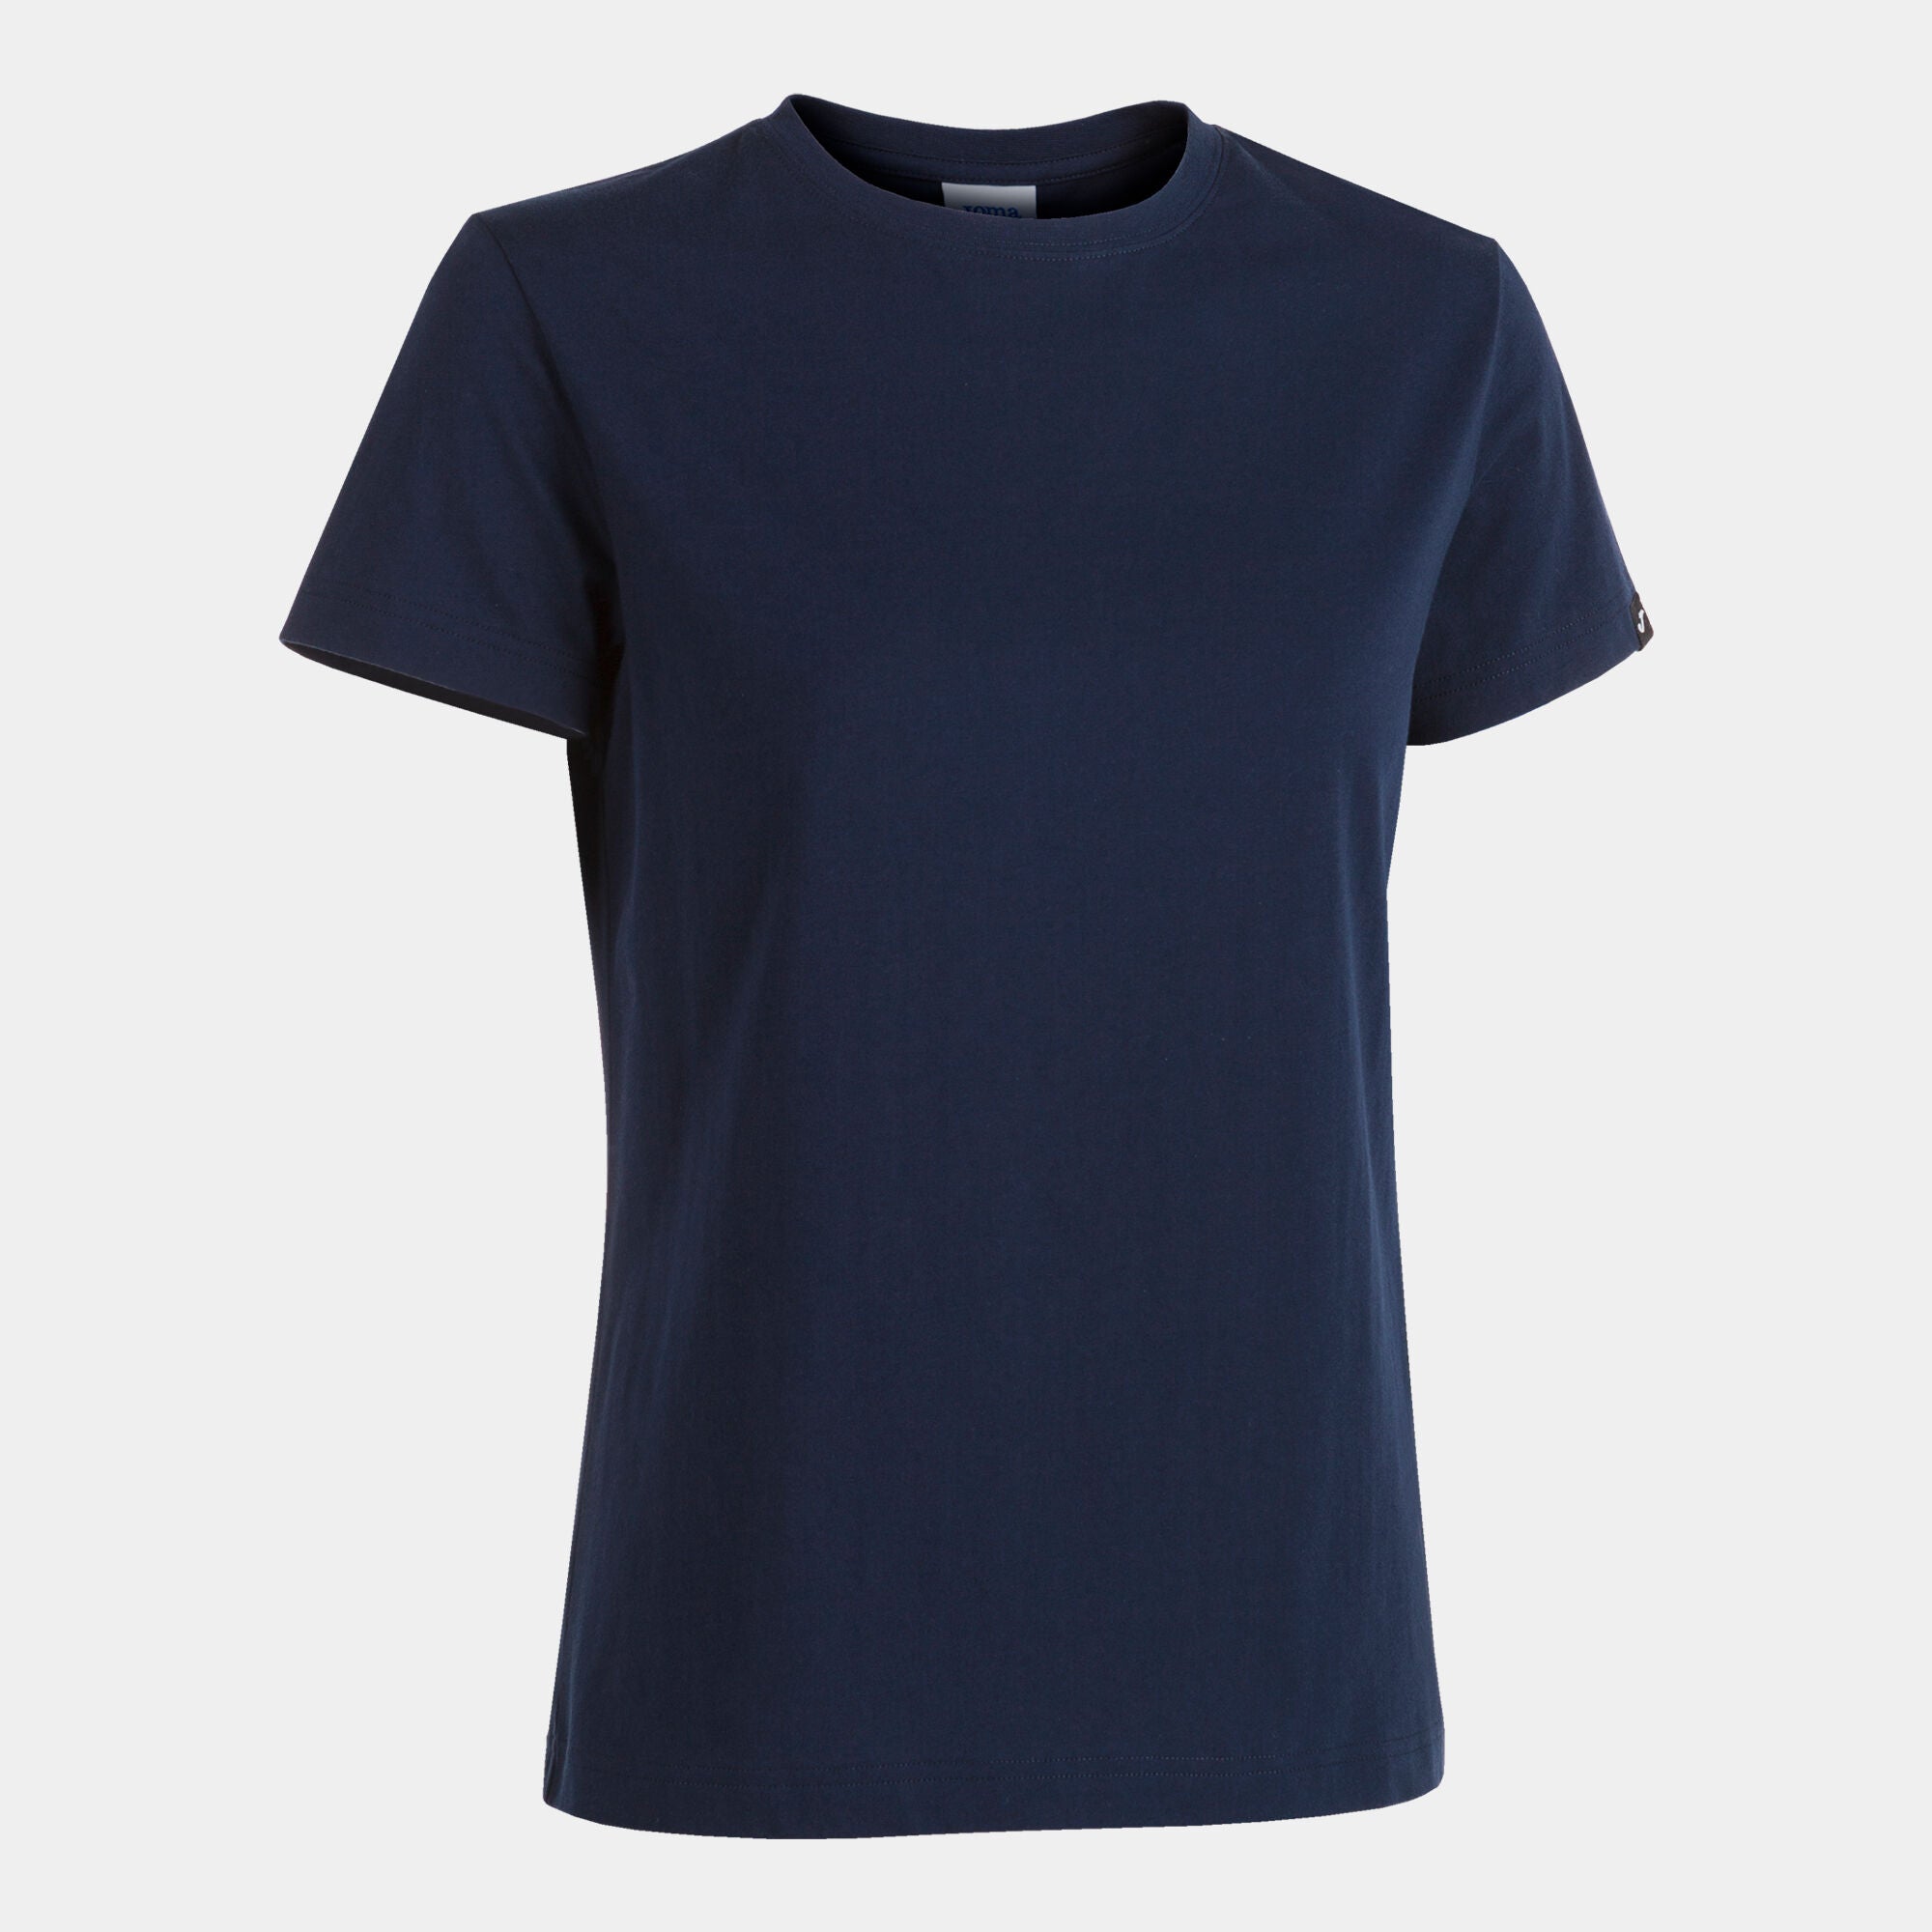 Joma Desert Round Neck T-shirt Women-2376-Navy